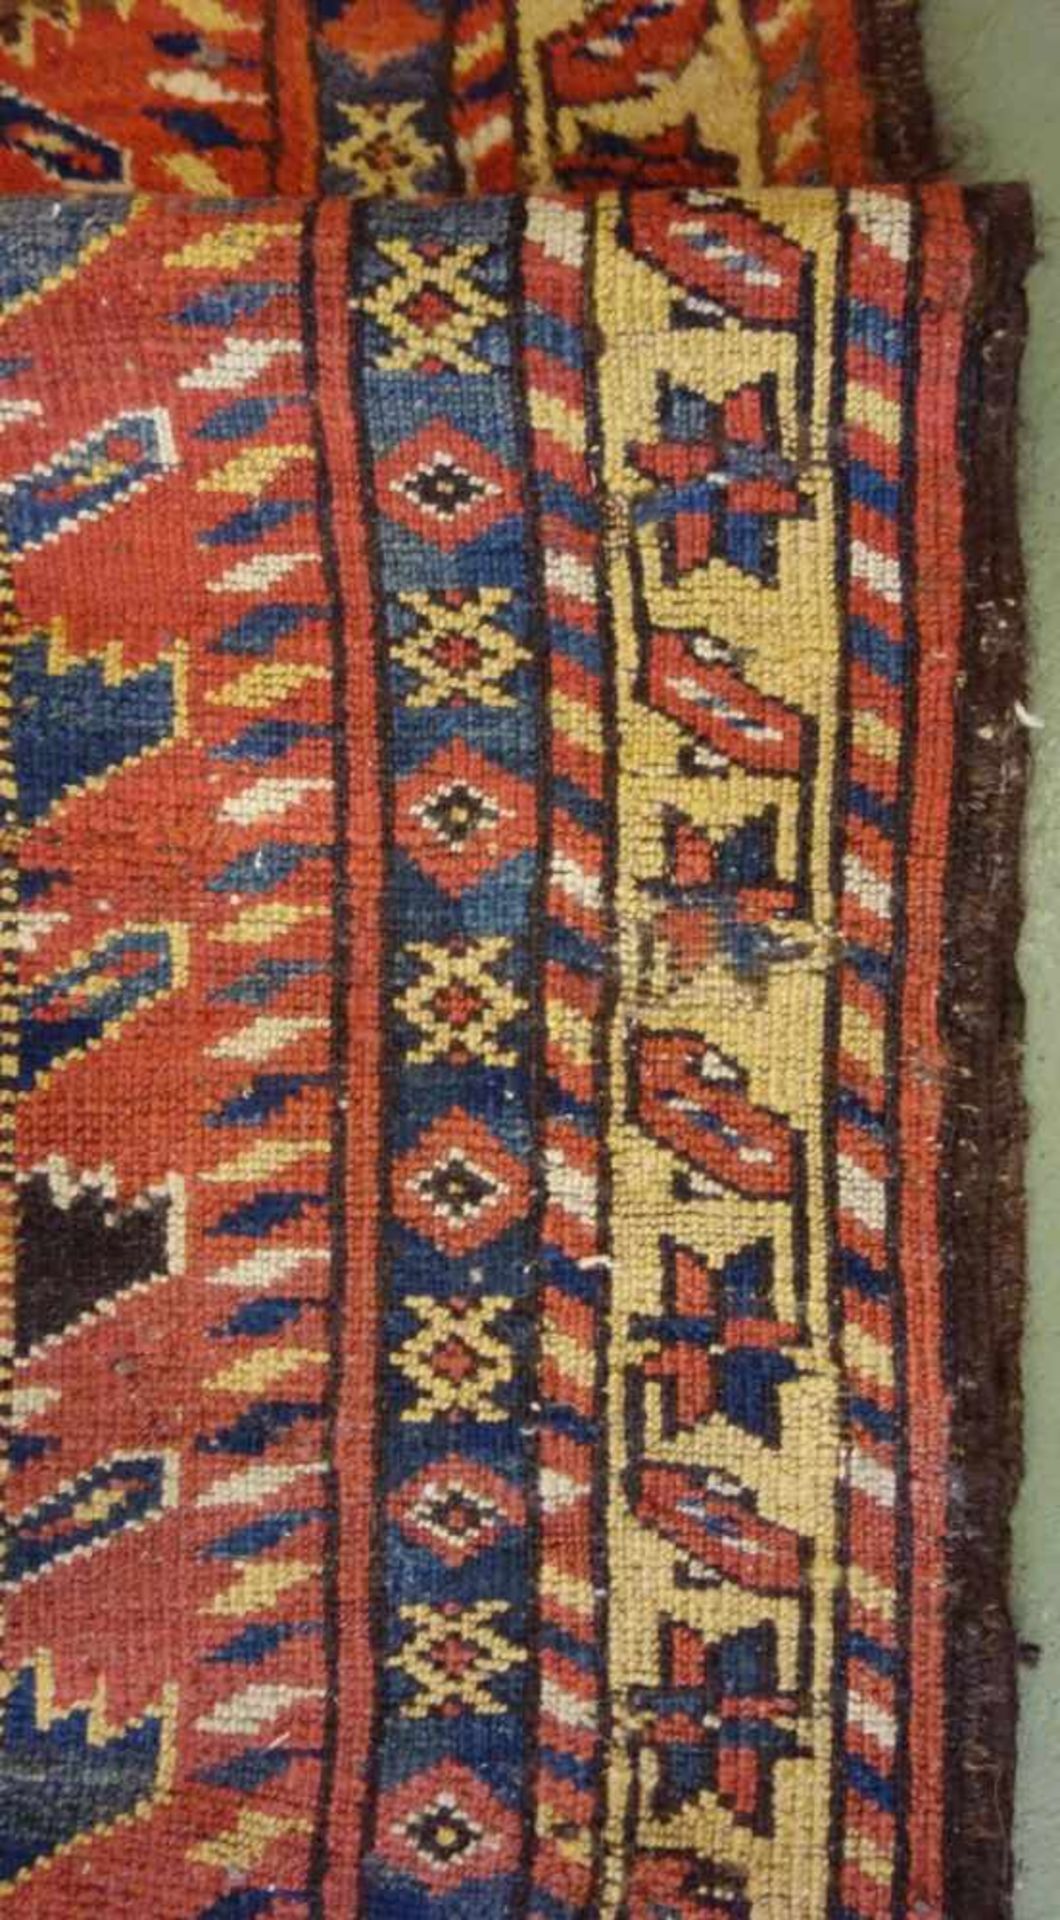 SCHMALER BESCHIR GEBETSTEPPICH / prayer rug, wohl 2. H. 19. Jh., Turkmenistan / Ersari-Beschir ( - Image 14 of 24